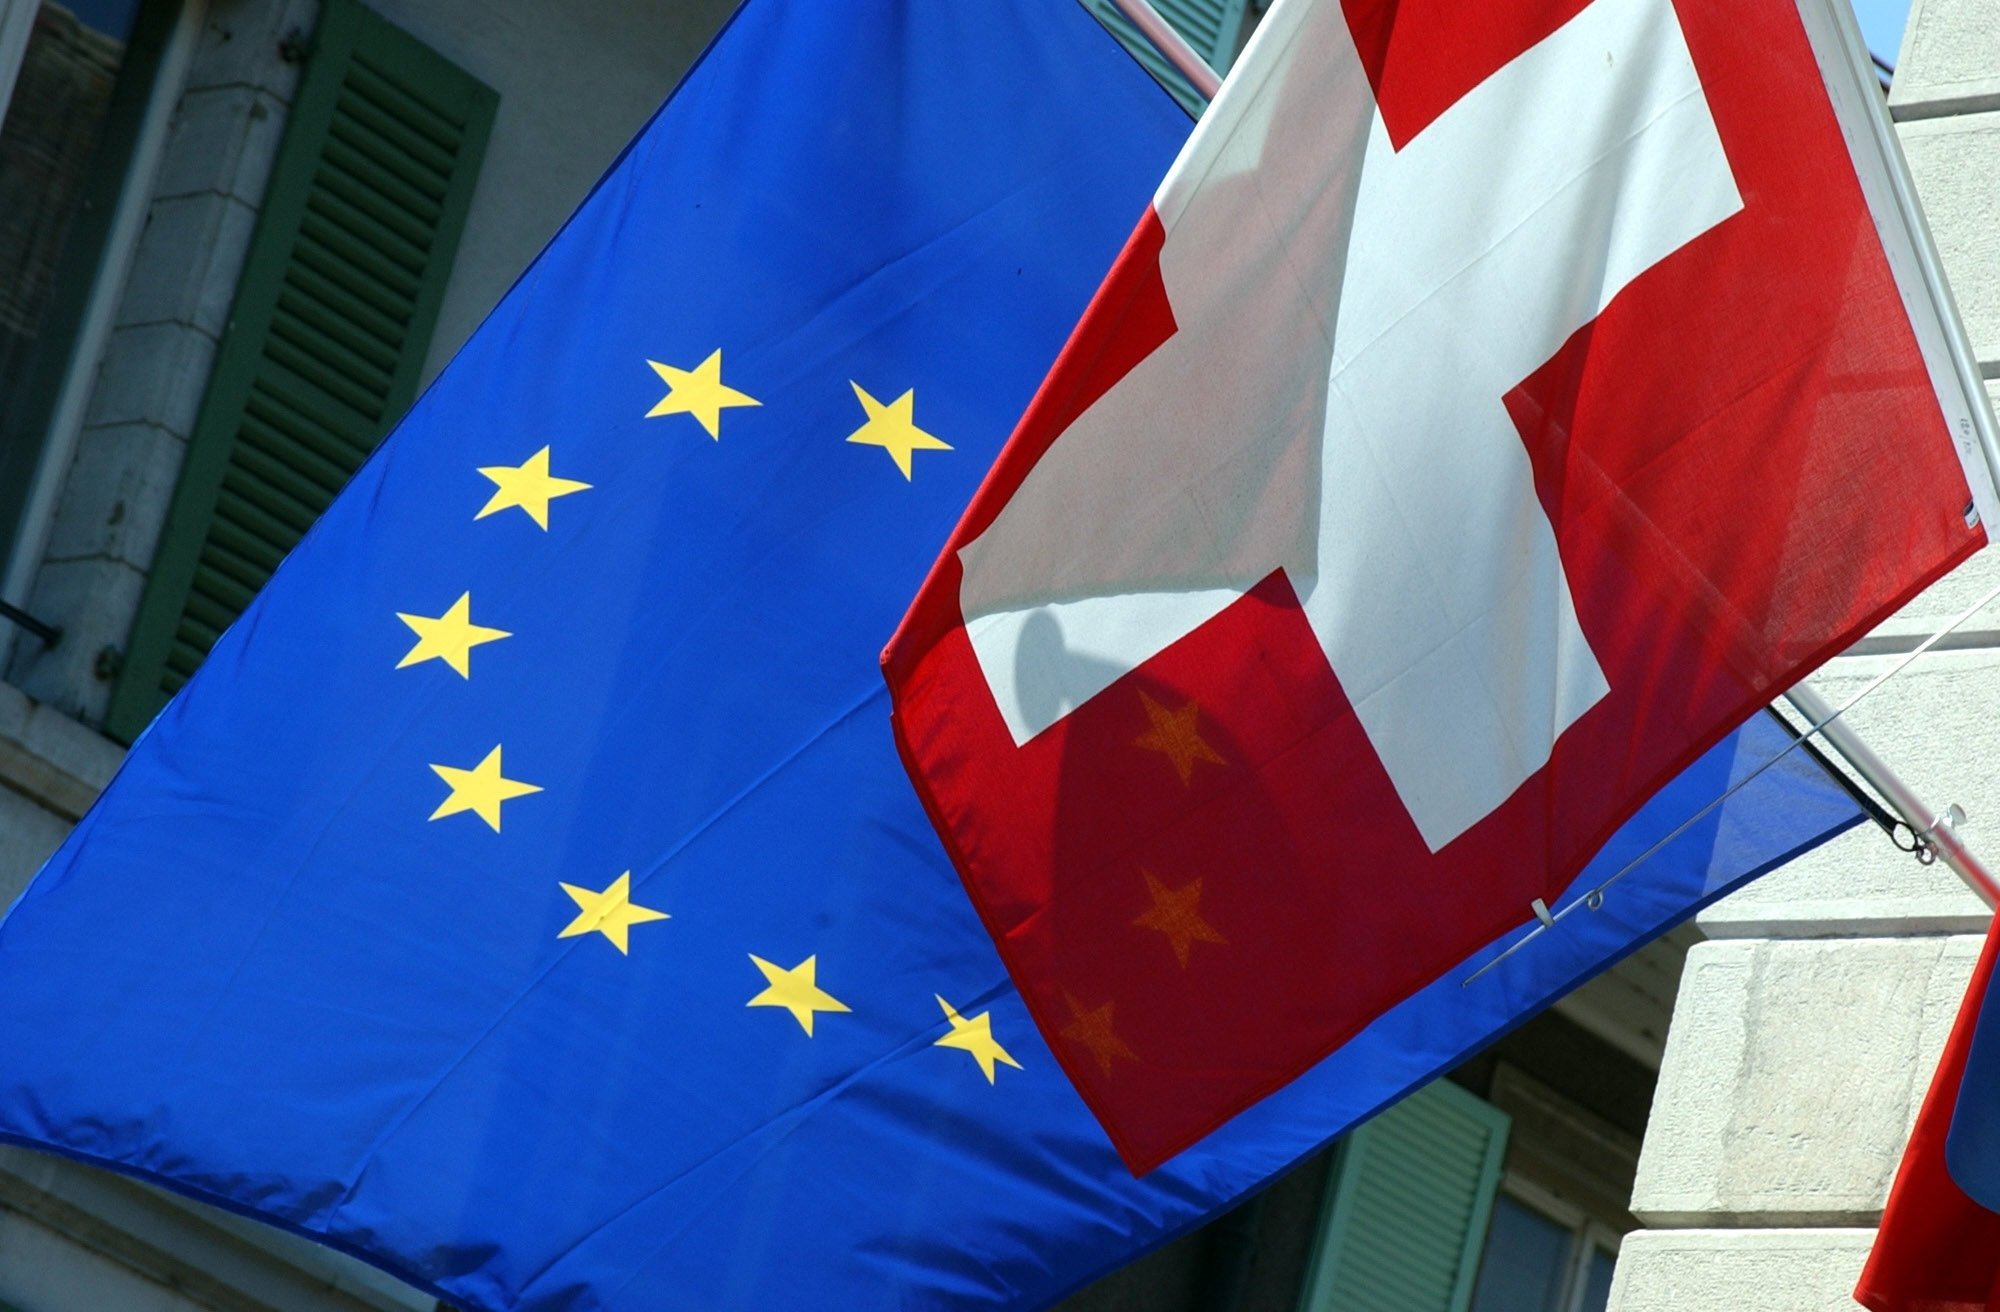 L'initiative de limitation pose la question des relations entre la Suisse et l'Europe.